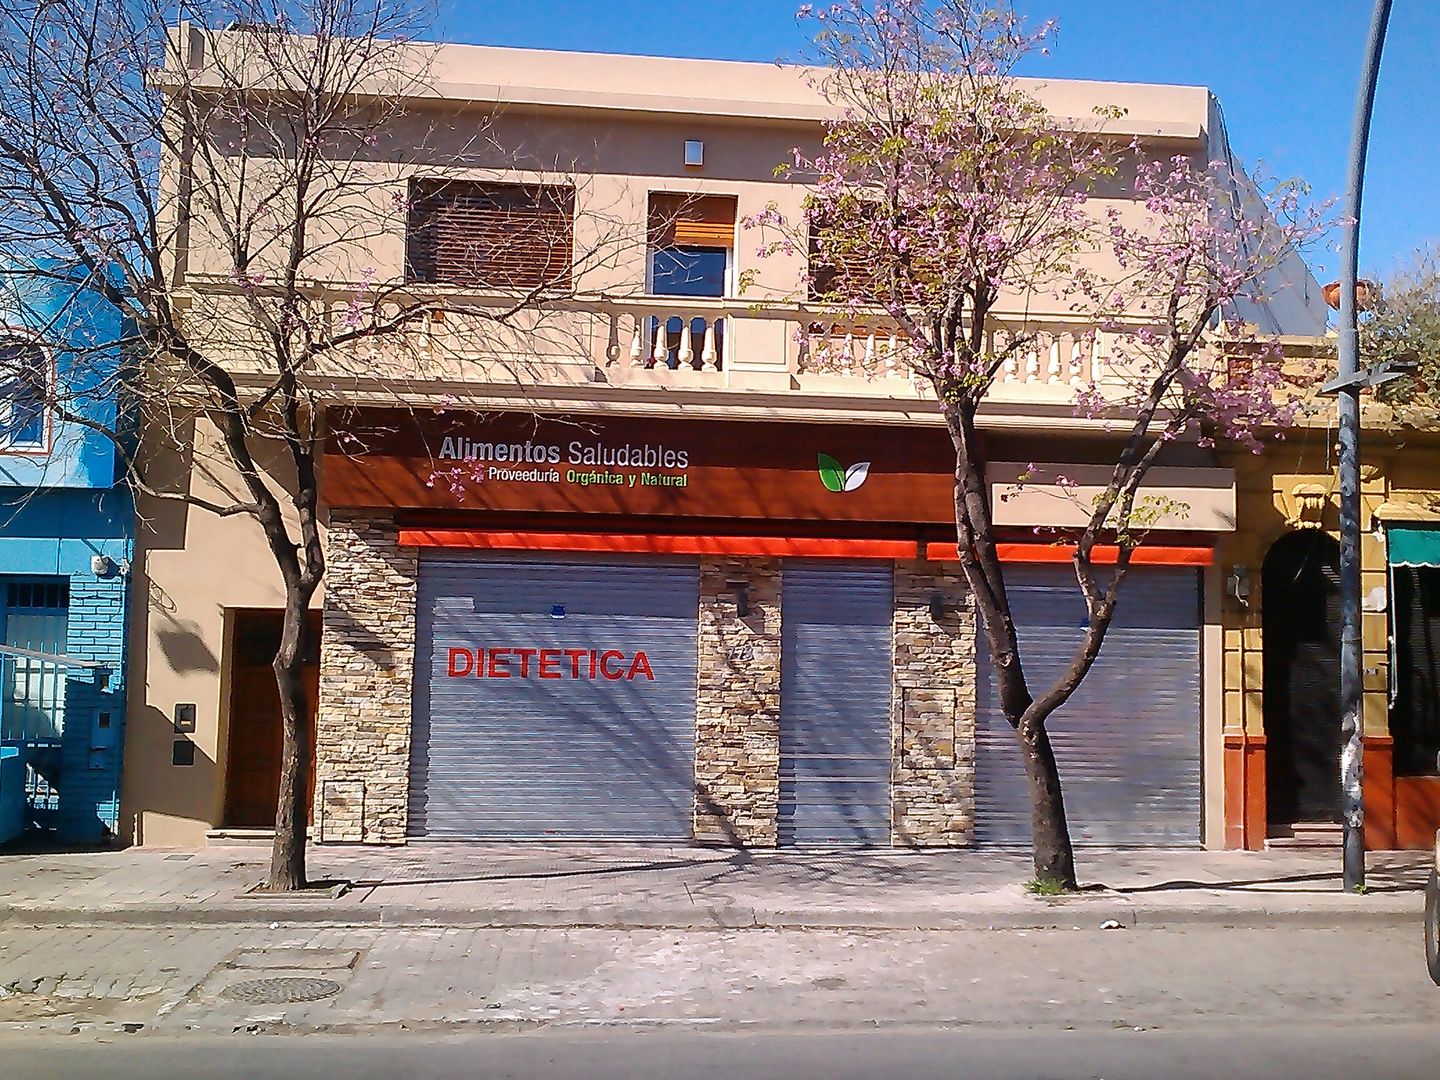 Frente del local manteniendo la imagen original de la fachada recuperada Faerman Stands y Asoc S.R.L. - Arquitectos - Rosario